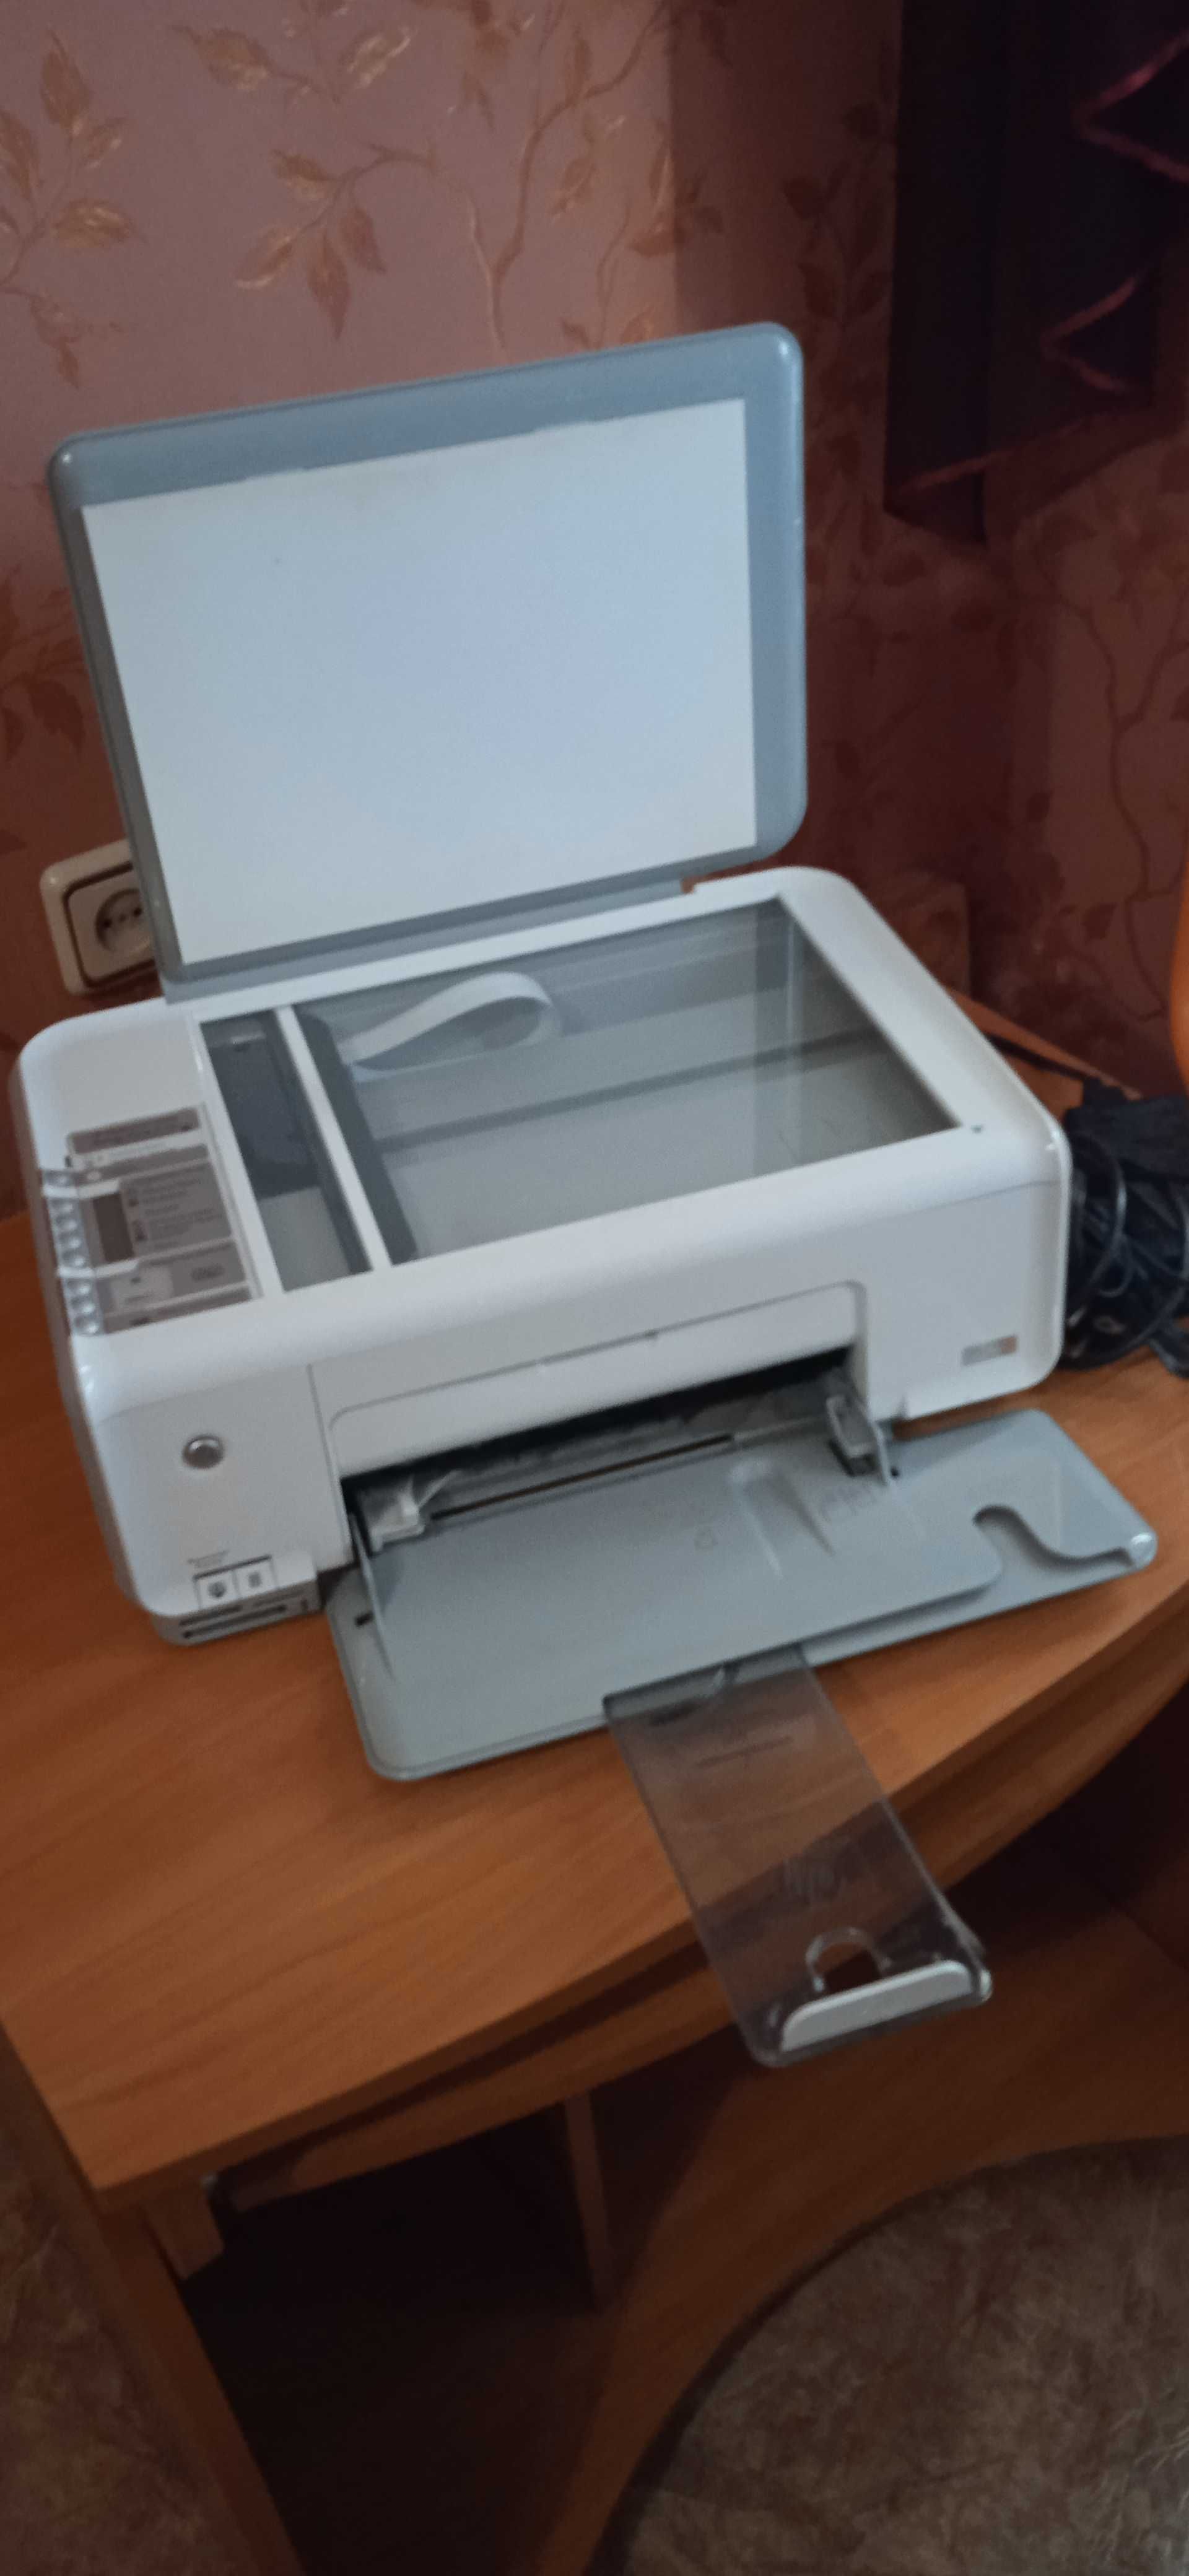 принтер сканер мфу HP C3183 цветной